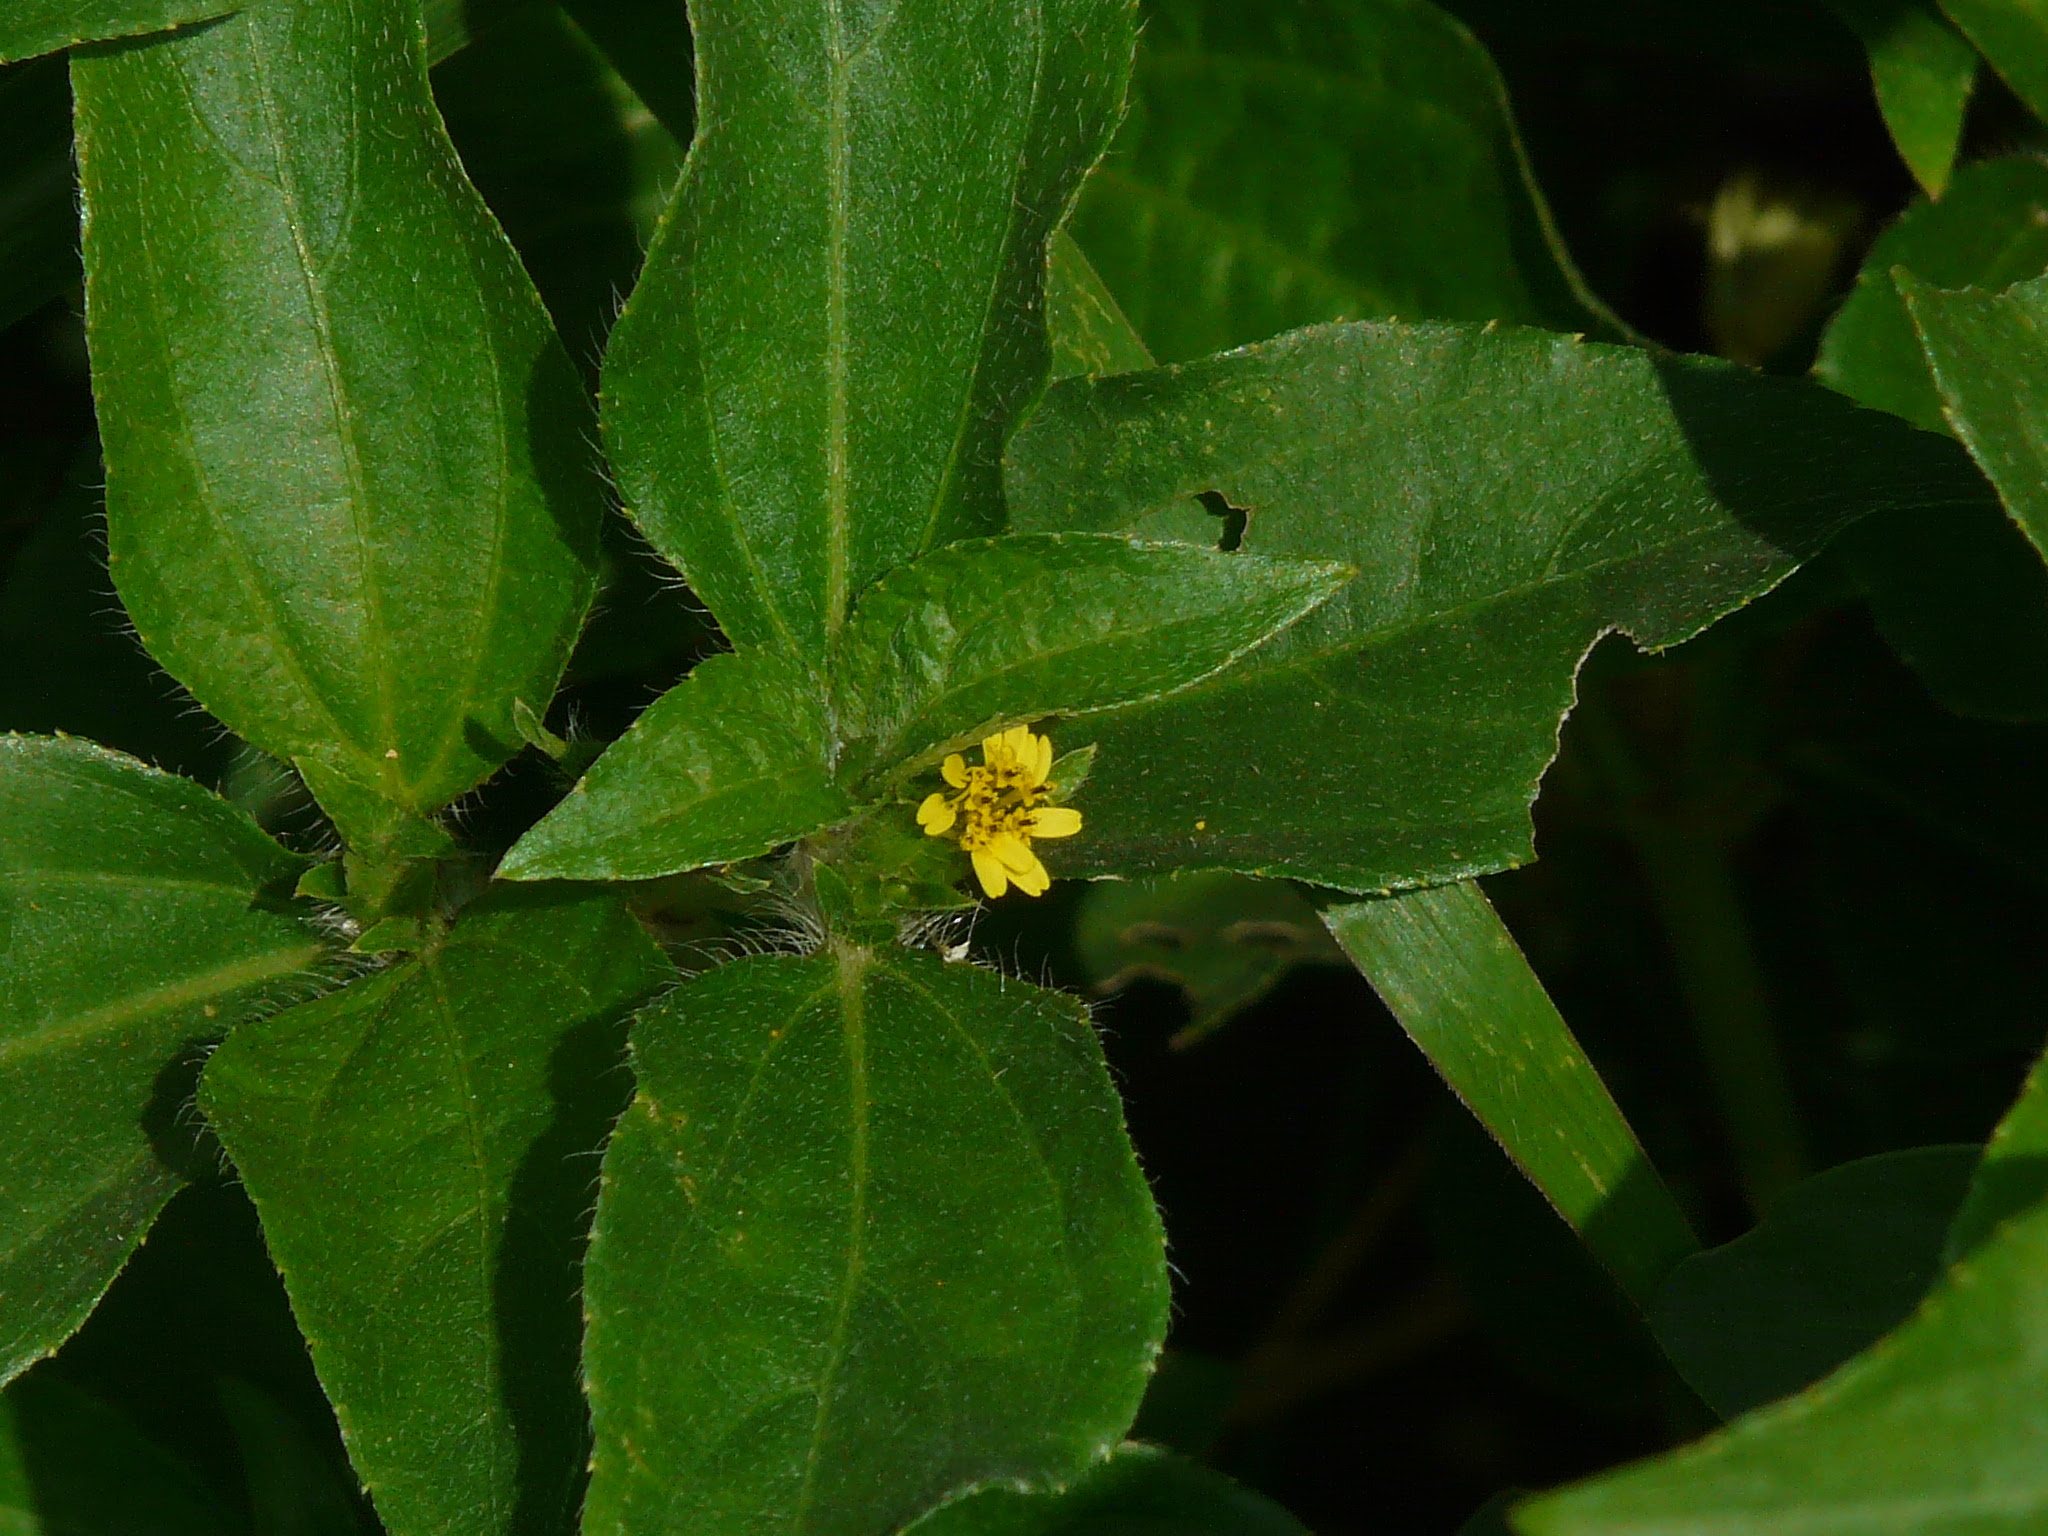 Synedrella nodiflora (L.) Gaertn. ... FOR VALIDATION